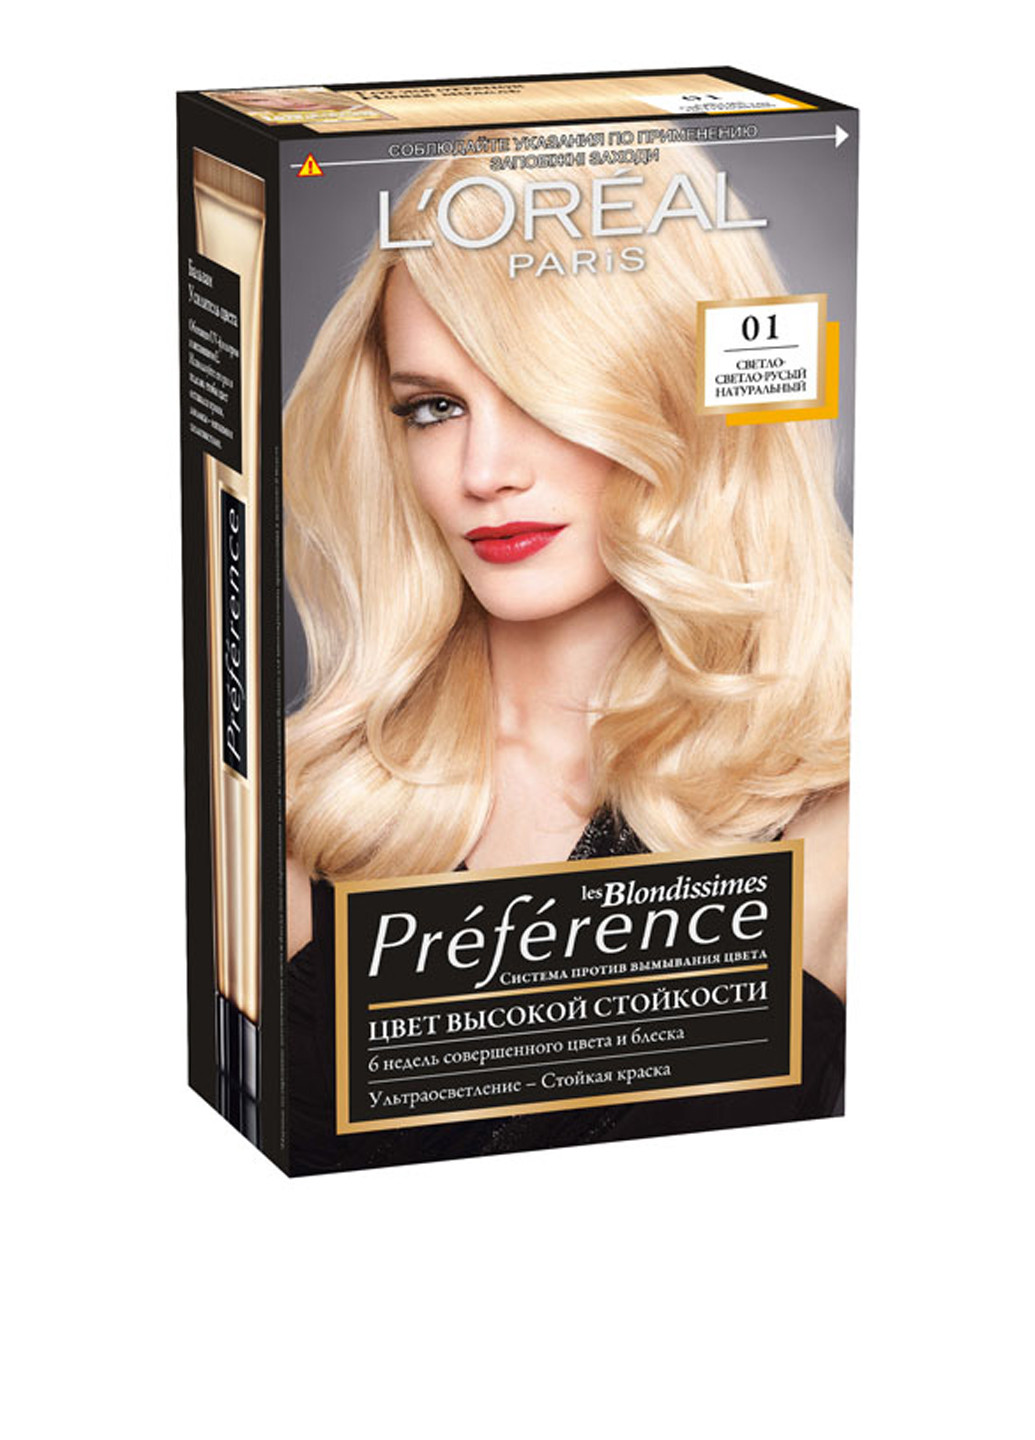 Краска для волос Preference оттенок 01 светло-светло-русый натуральный (3 пр.) L'Oreal Paris (96594068)